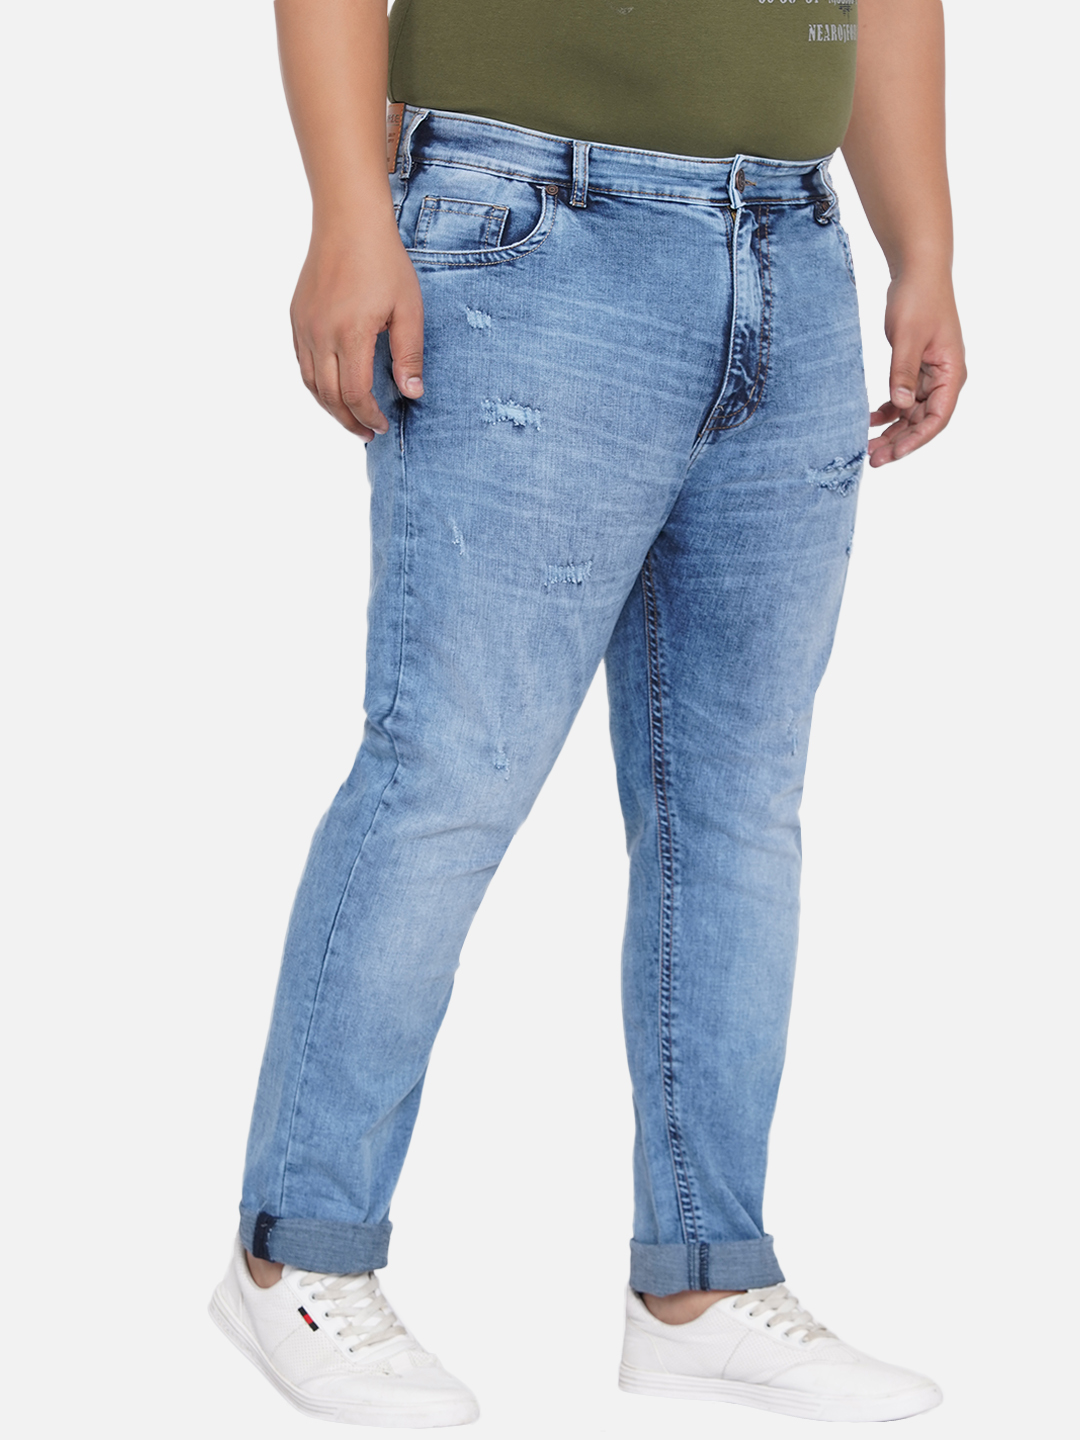 bottomwear/jeans/JPJ12200/jpj12200-3.jpg